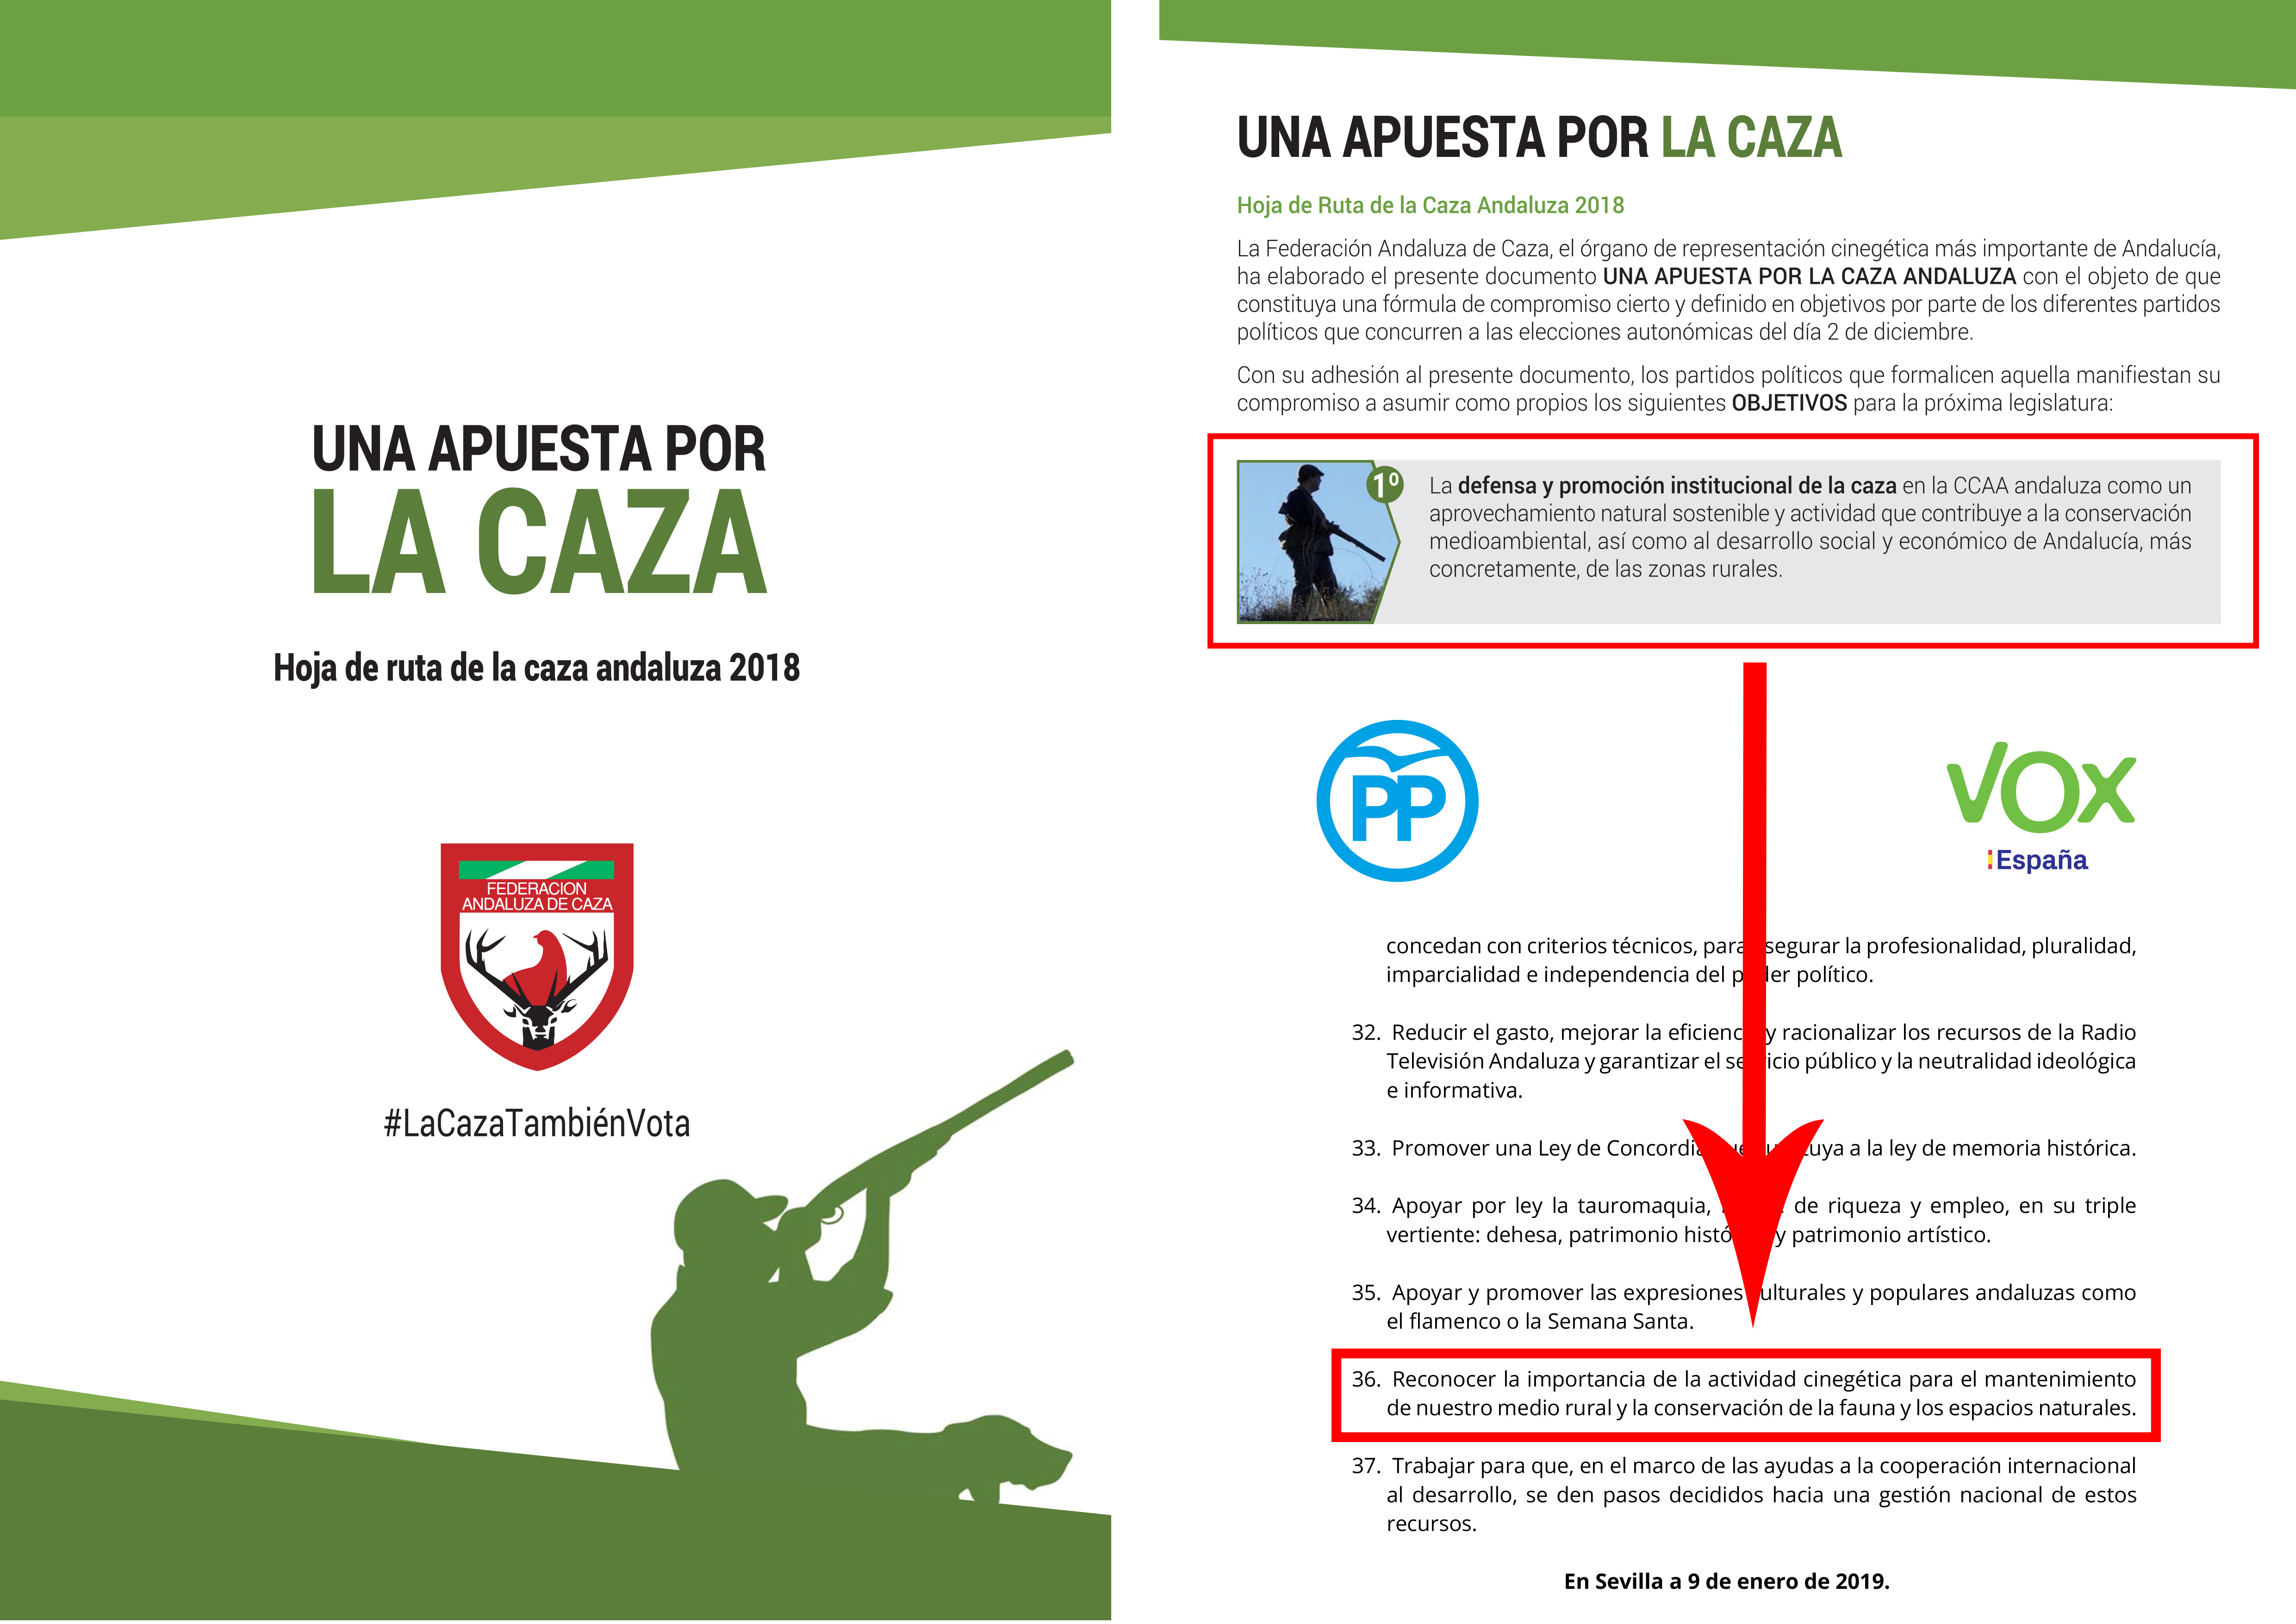 #LaCazaTambienVota alcanza su objetivo: el nuevo Gobierno Andaluz se compromete al reconocimiento de la caza